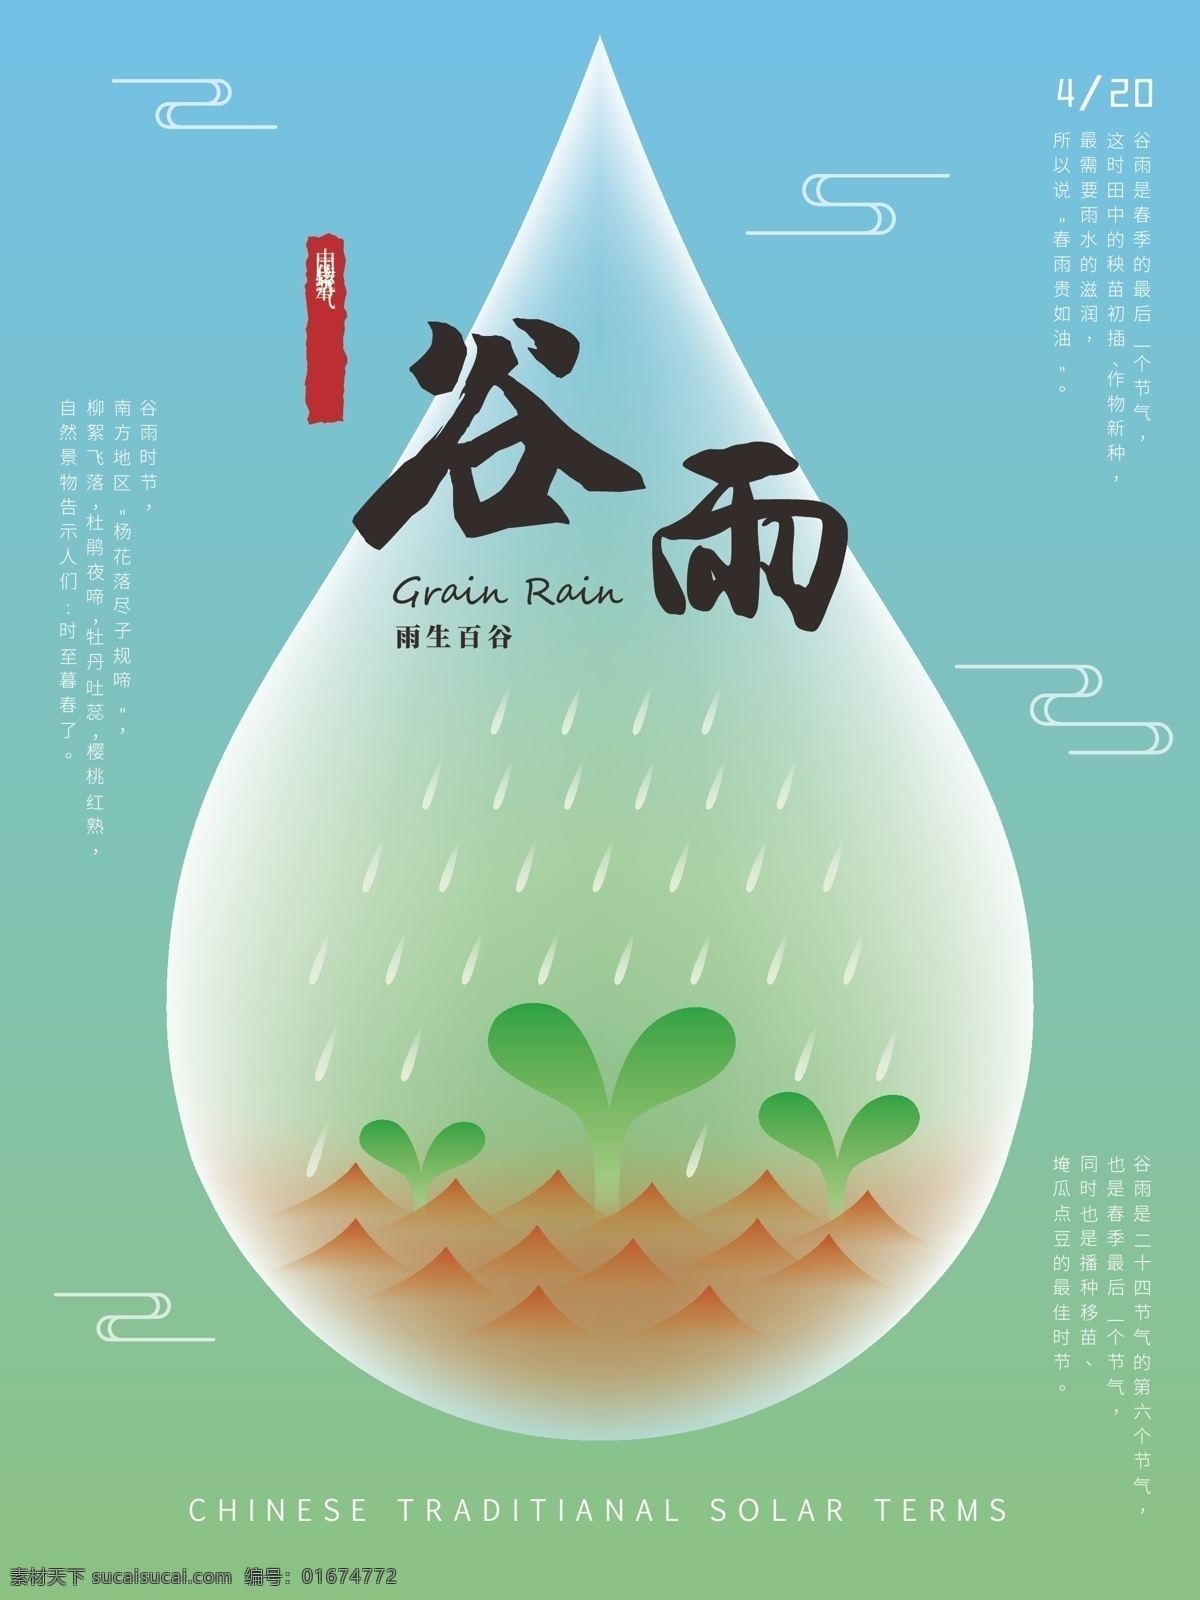 原创 中国 传统 节气 谷雨 海报 二十四节气 中国节气 传统节气 谷雨节气 节气海报 小清新